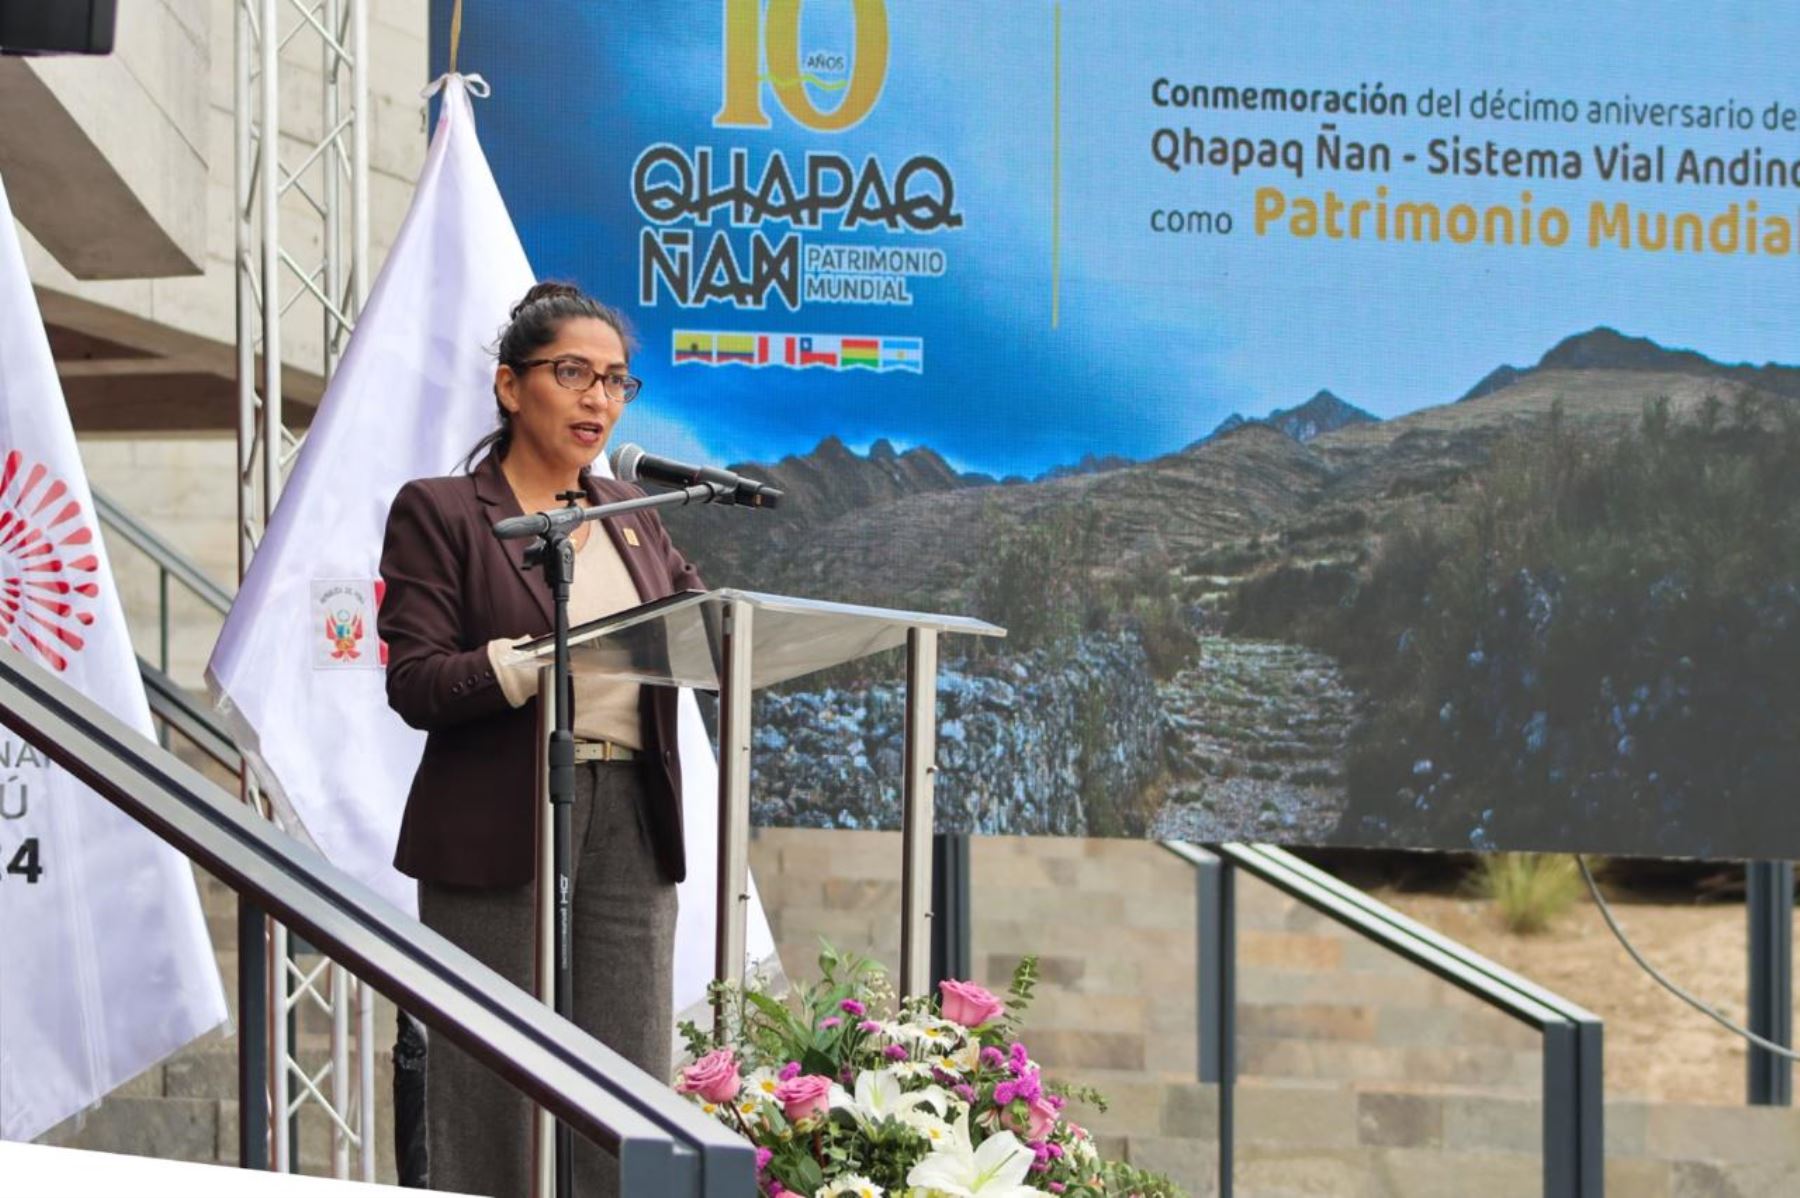 Se han programado diversas actividades para celebrar el décimo aniversario del Qhapaq Ñan-sistema vial andino como Patrimonio Mundial. Foto: ANDINA/Mincul